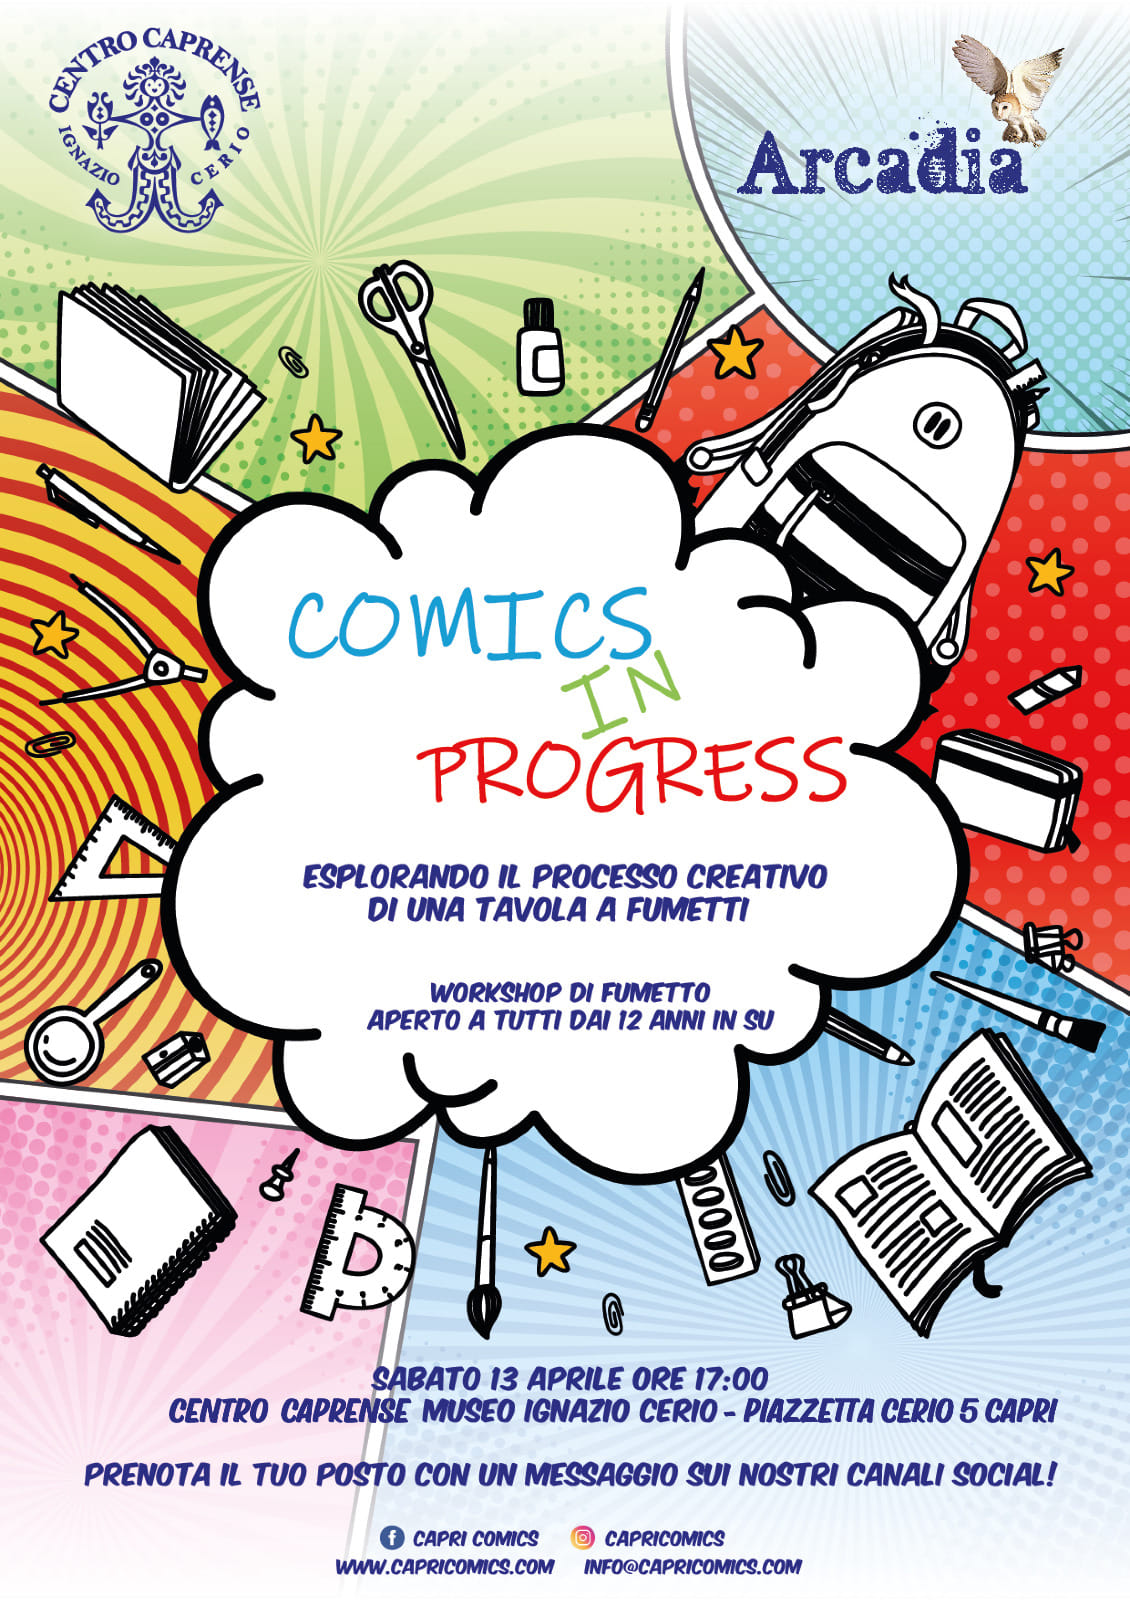 Comics in Progress, esplorando il processo creativo di una tavola a fumetti: workshop a Capri